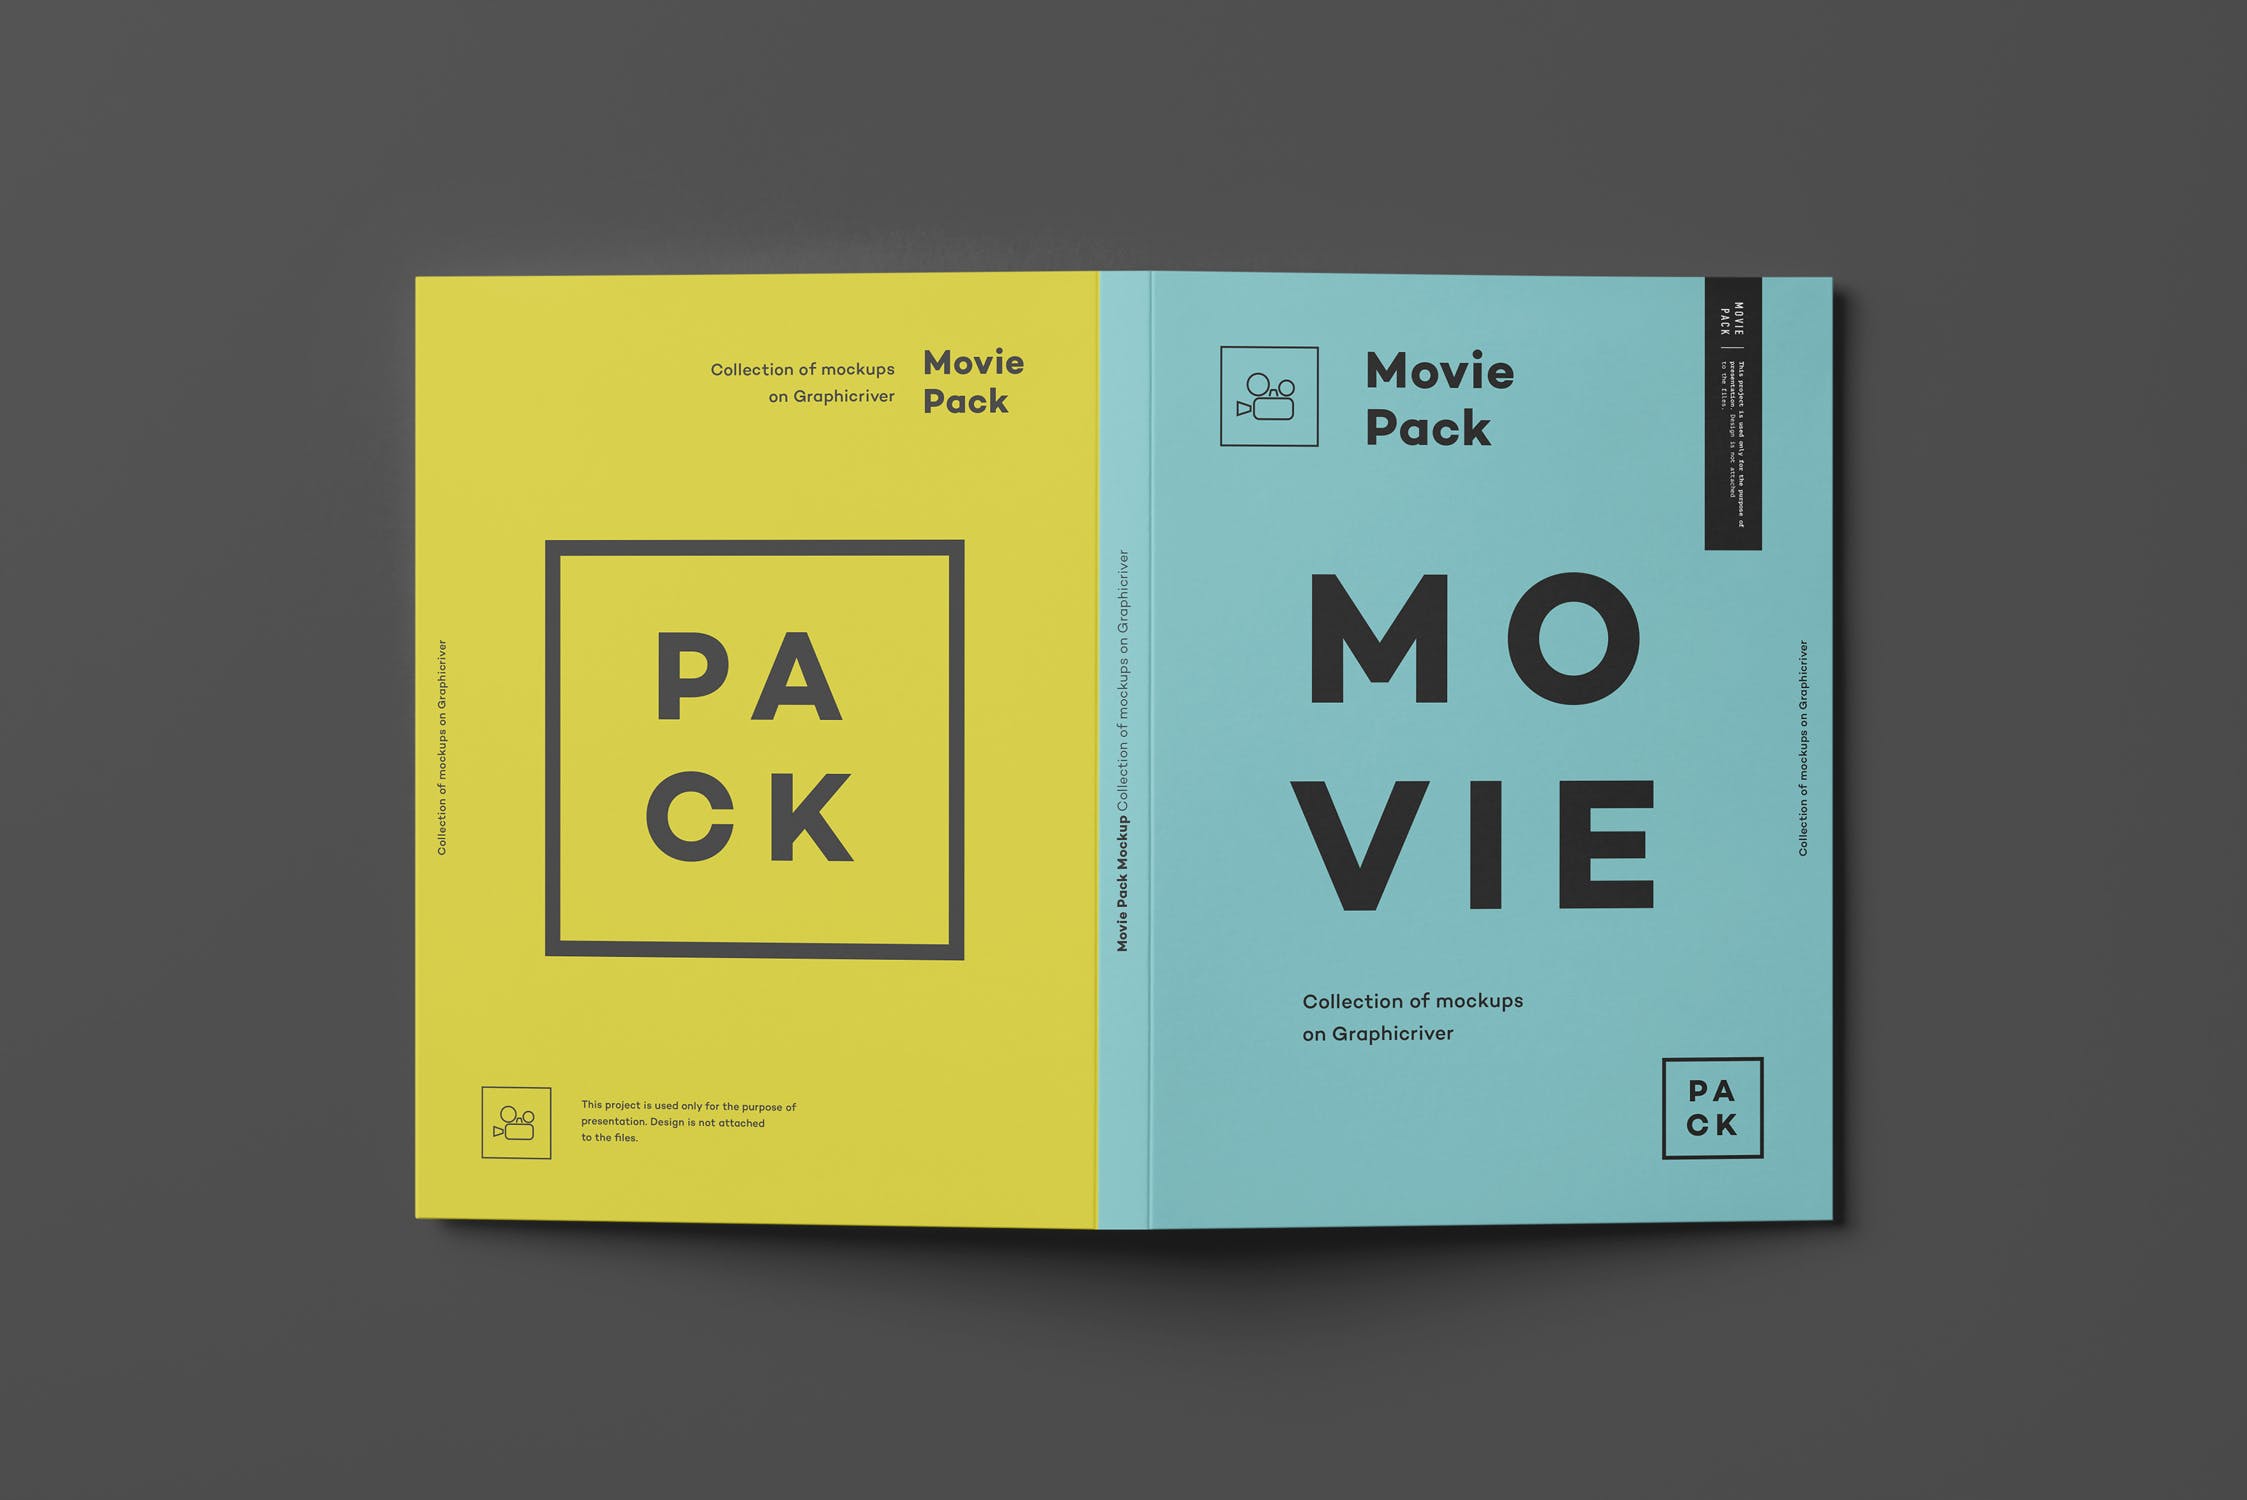 电影DVD包装盒外观设计样机3 Movie Pack Mock-up 3插图(6)